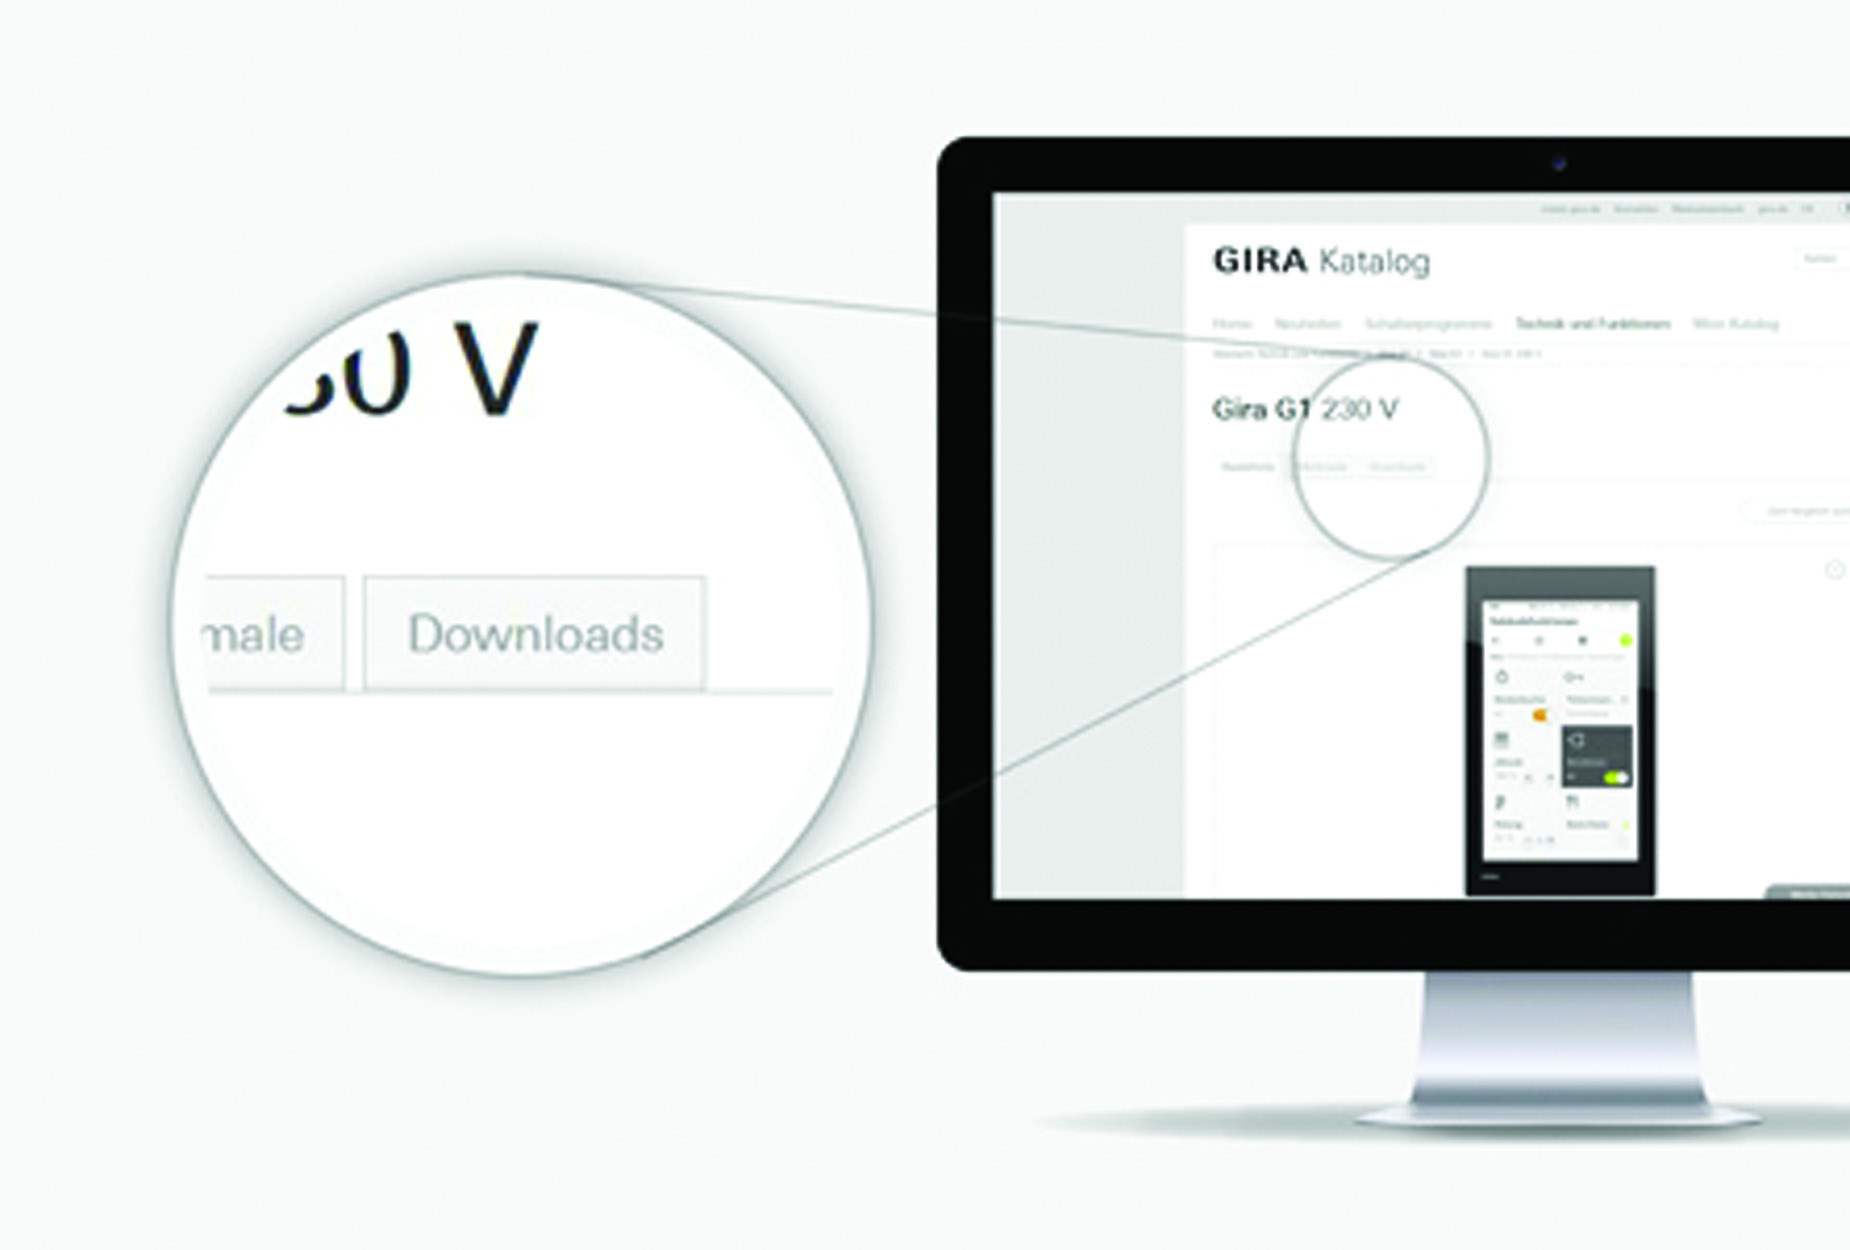 New BIM Download Service from Gira UK @Gira